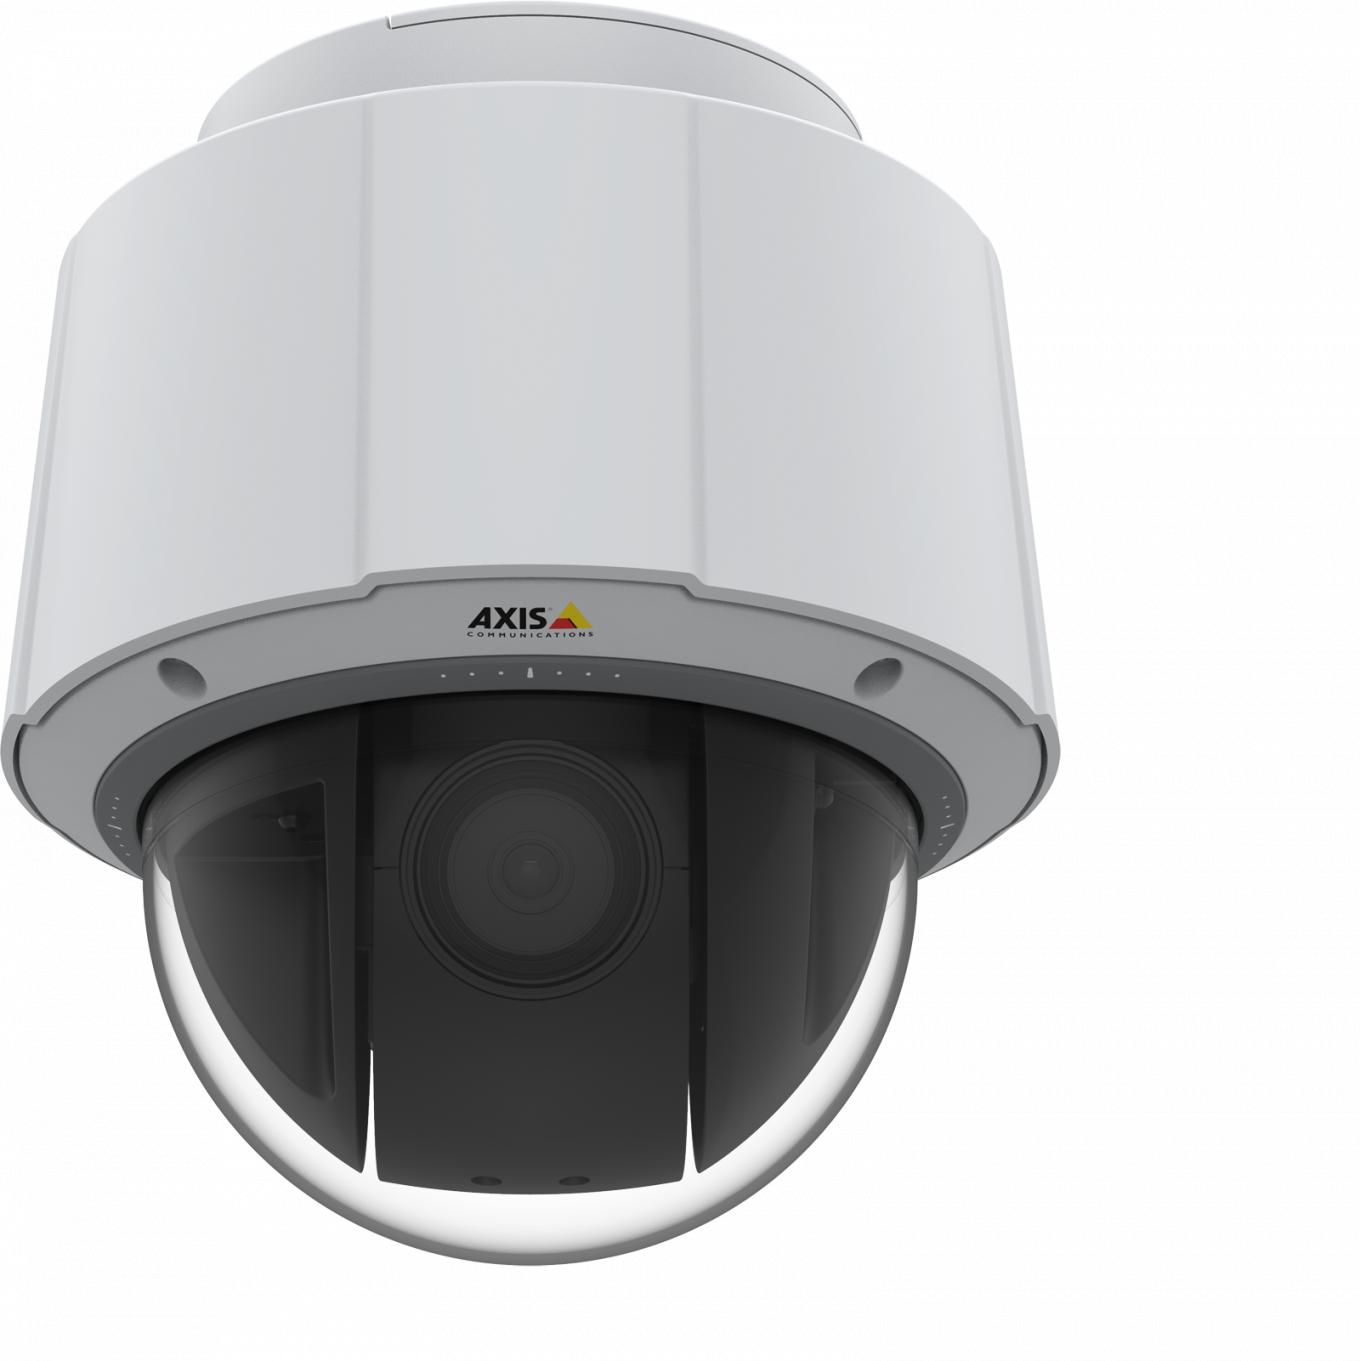 AXIS Q6074 IP Camera è dotata di funzioni PTZ per l'uso in ambienti interni con HDTV 720p e zoom 30x ottico